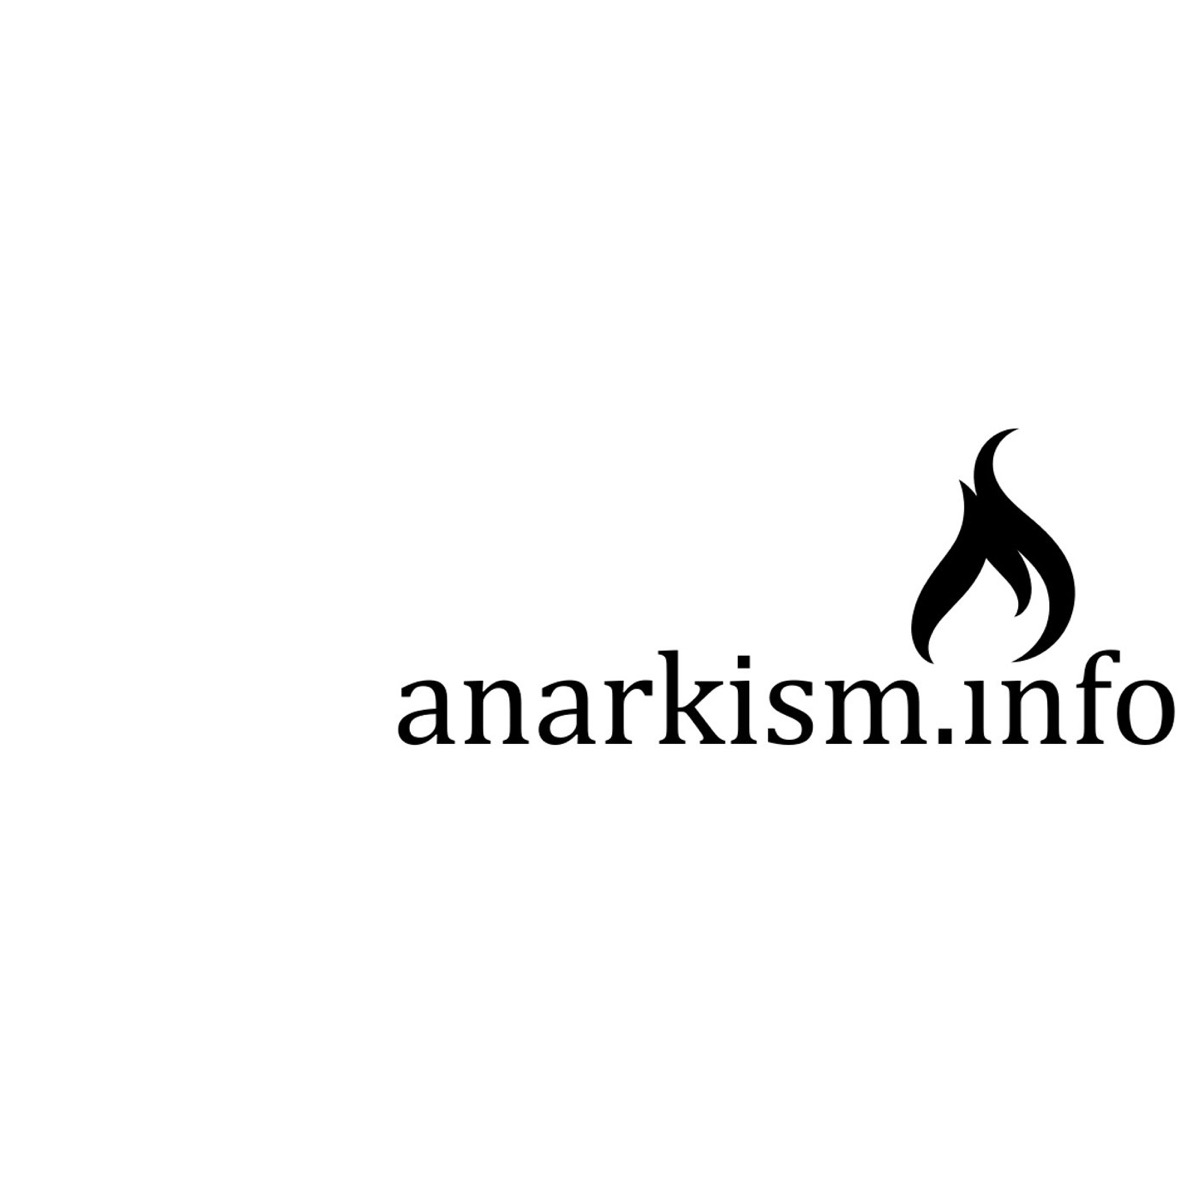 Protester i Frankrike och Hyresgästföreningen (väst) – anarkism.info  podcast #12 – Kravallsamtal #2 - anarkism.info podcast | Lyssna här |  Poddtoppen.se